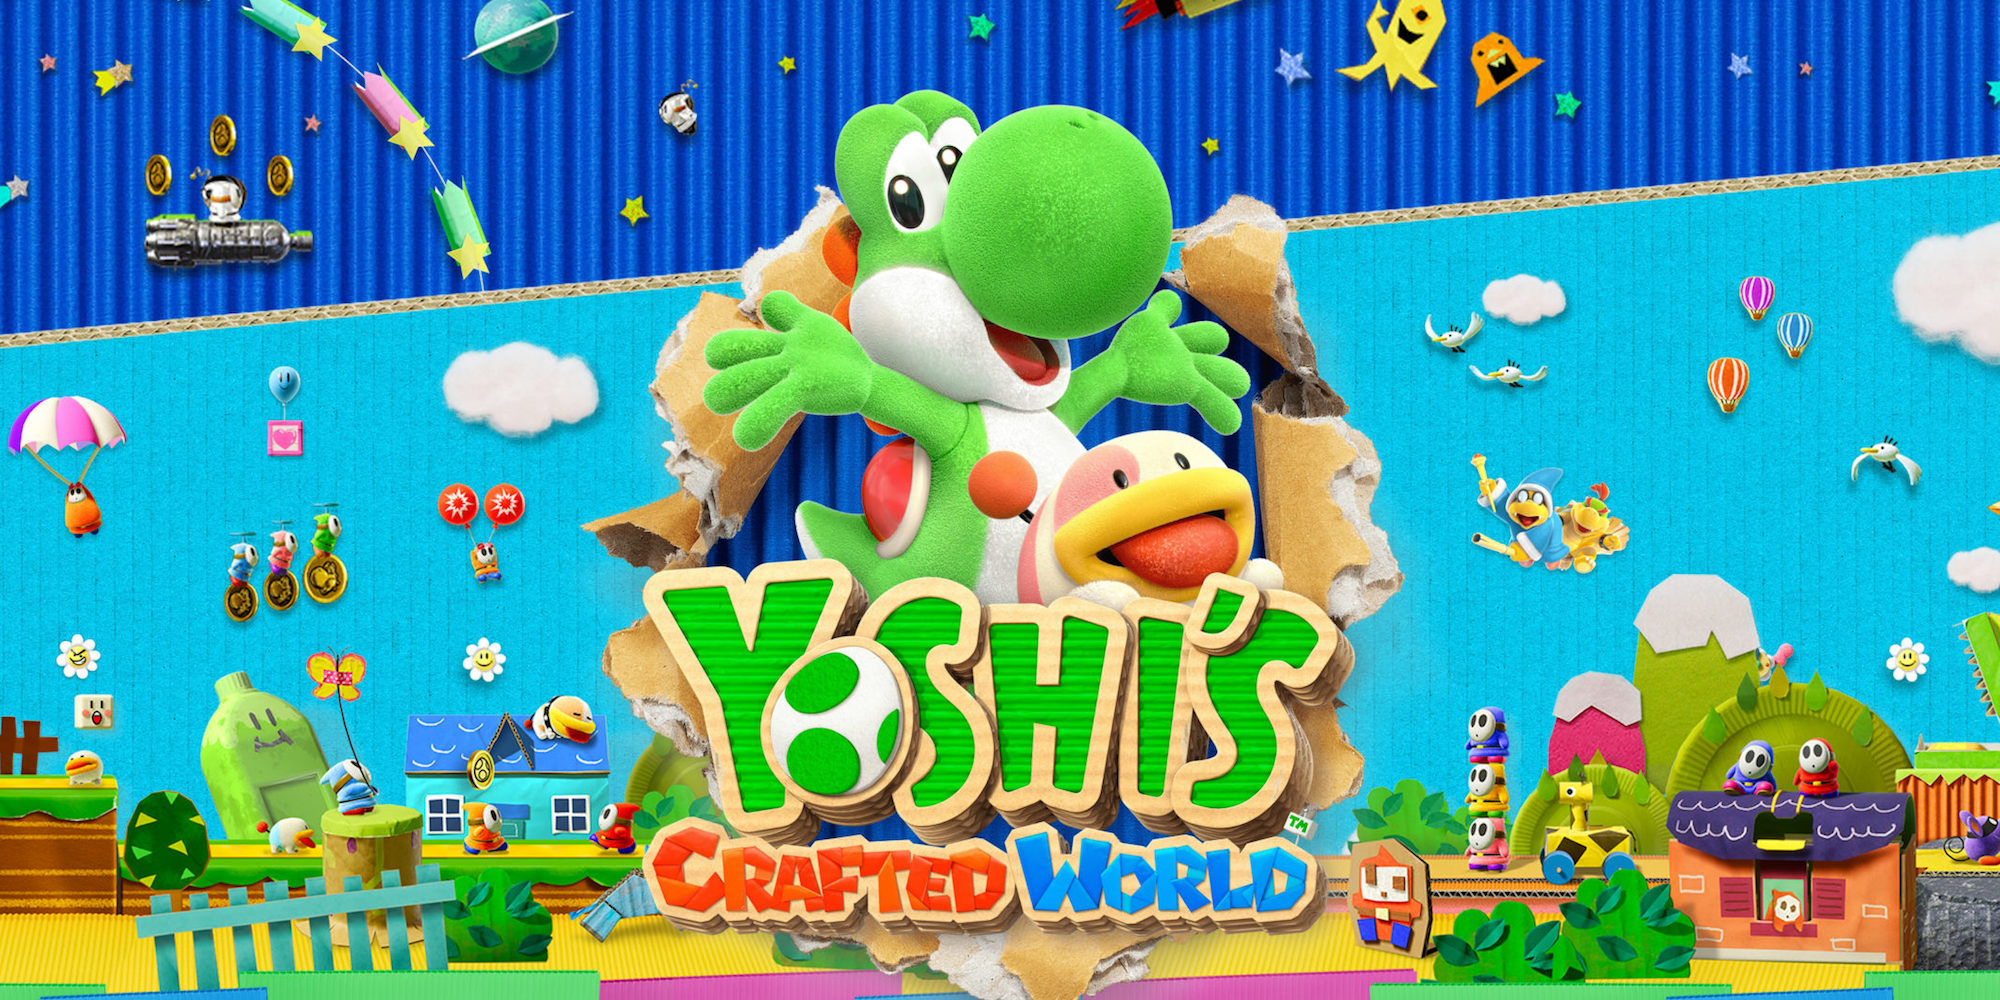 yoshi's crafted world amazon